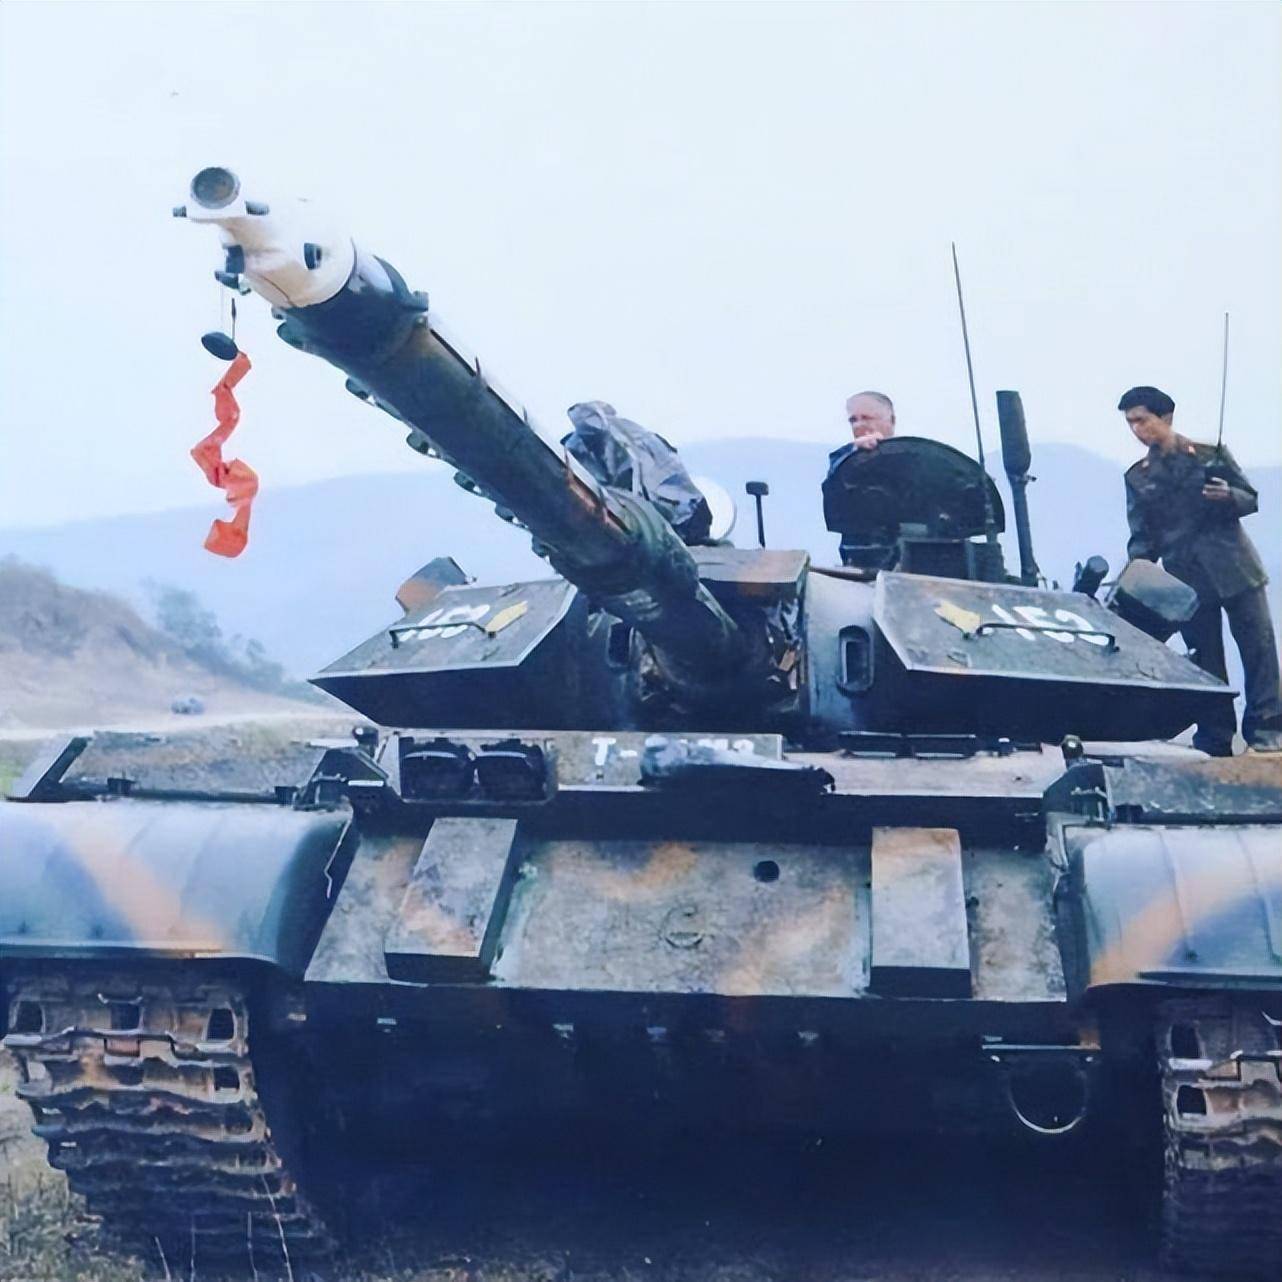 M3型90毫米火炮图片